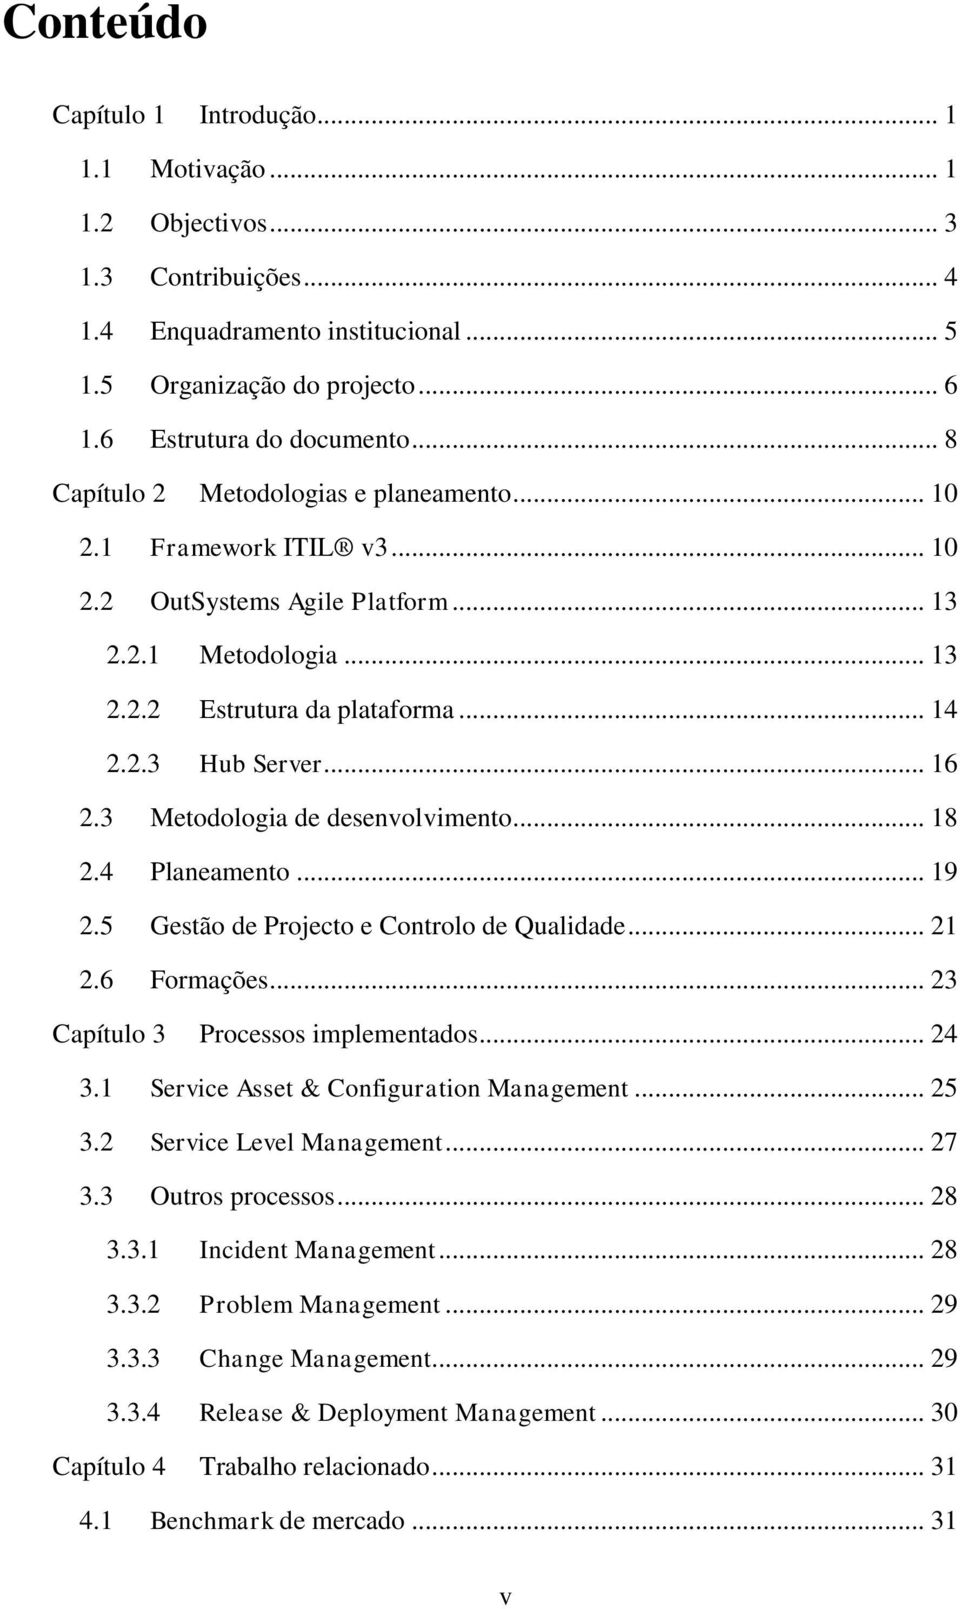 3 Metodologia de desenvolvimento... 18 2.4 Planeamento... 19 2.5 Gestão de Projecto e Controlo de Qualidade... 21 2.6 Formações... 23 Capítulo 3 Processos implementados... 24 3.